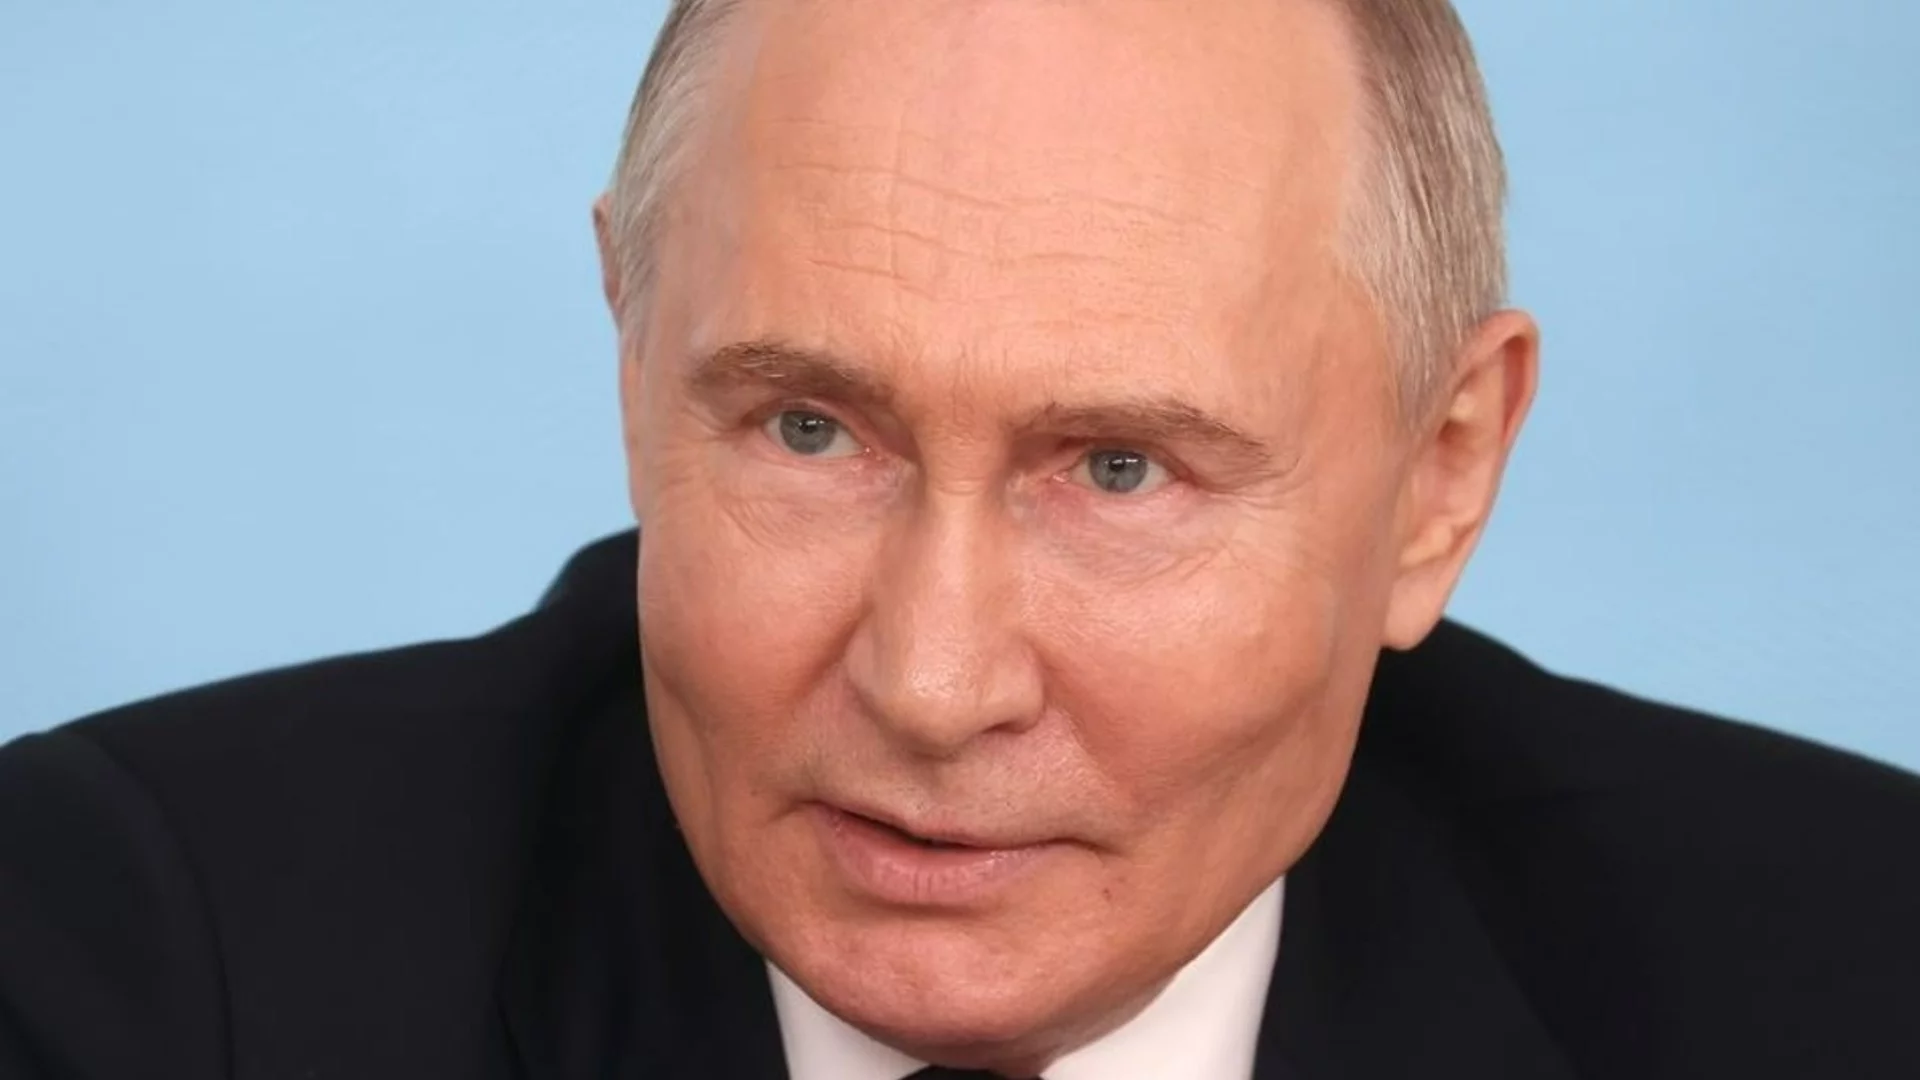 Путин мрънка: Не ние започнахме с ядрената риторика, онази госпожа от Великобритания беше (ВИДЕО)